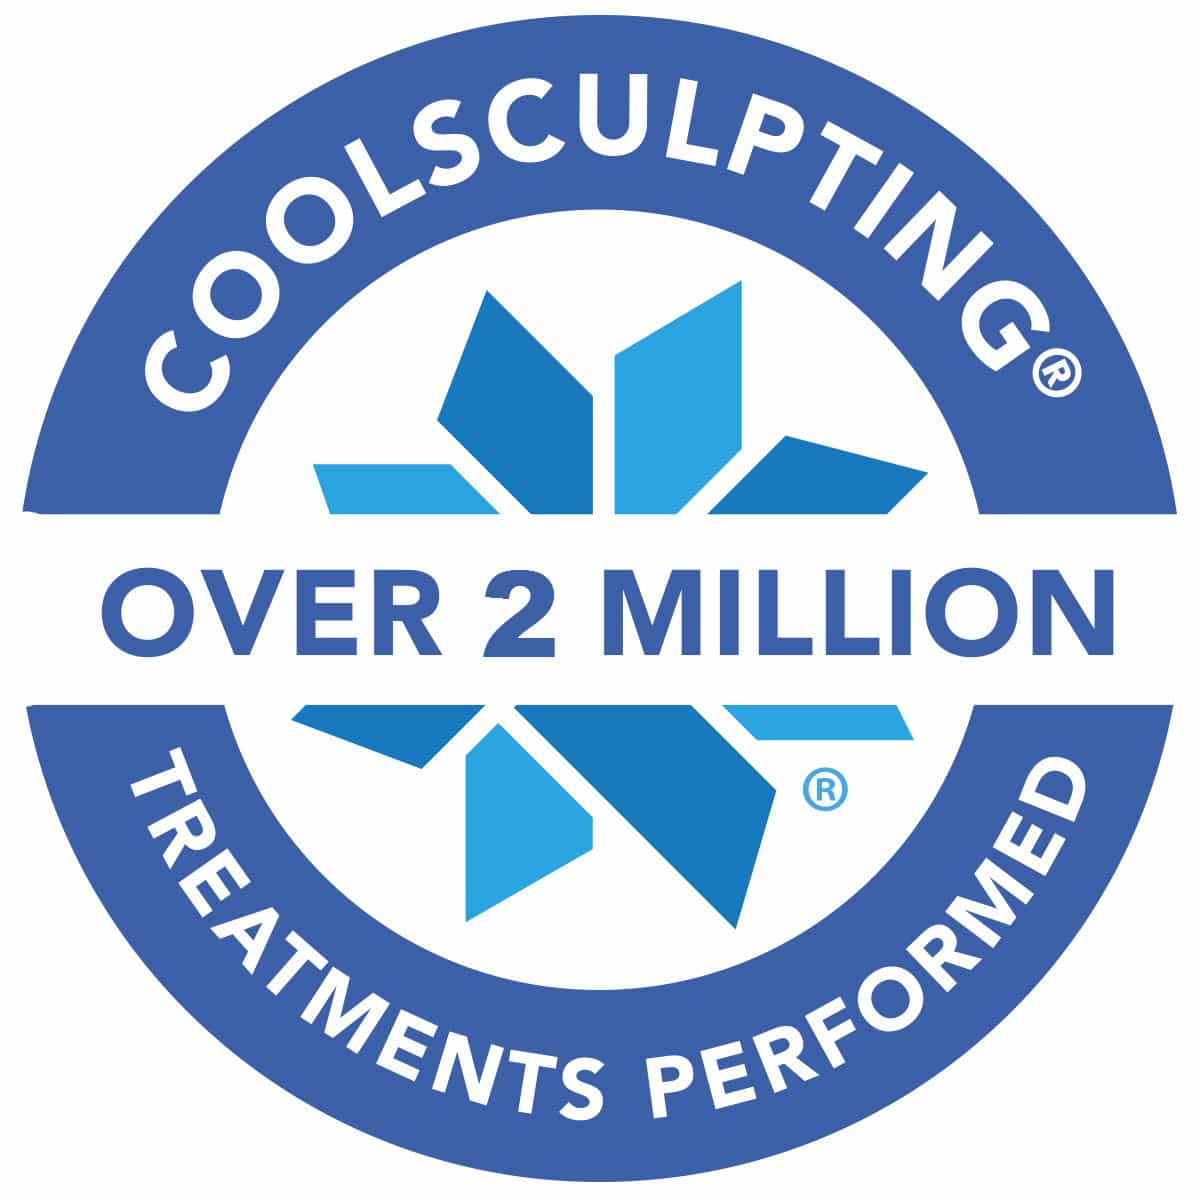 1 million treatments logo High Res JPEG 1 1